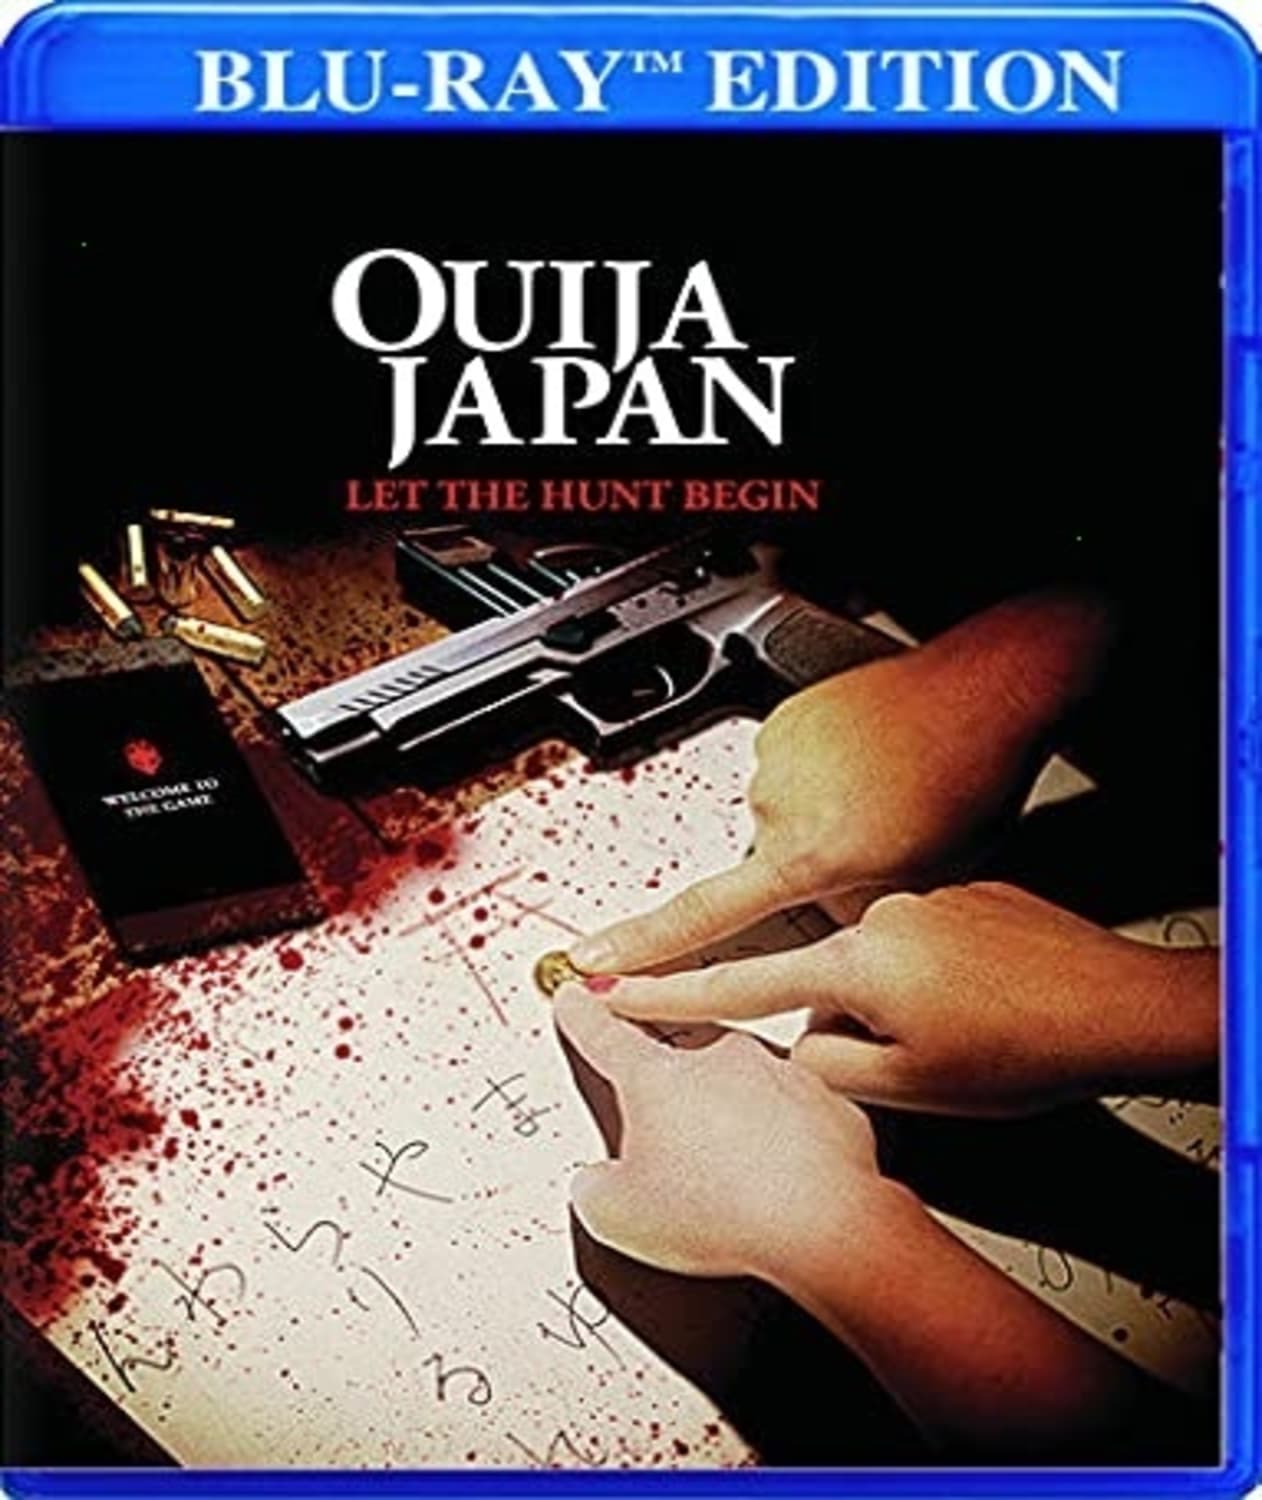 Ouija Japan (Blu-ray) on MovieShack